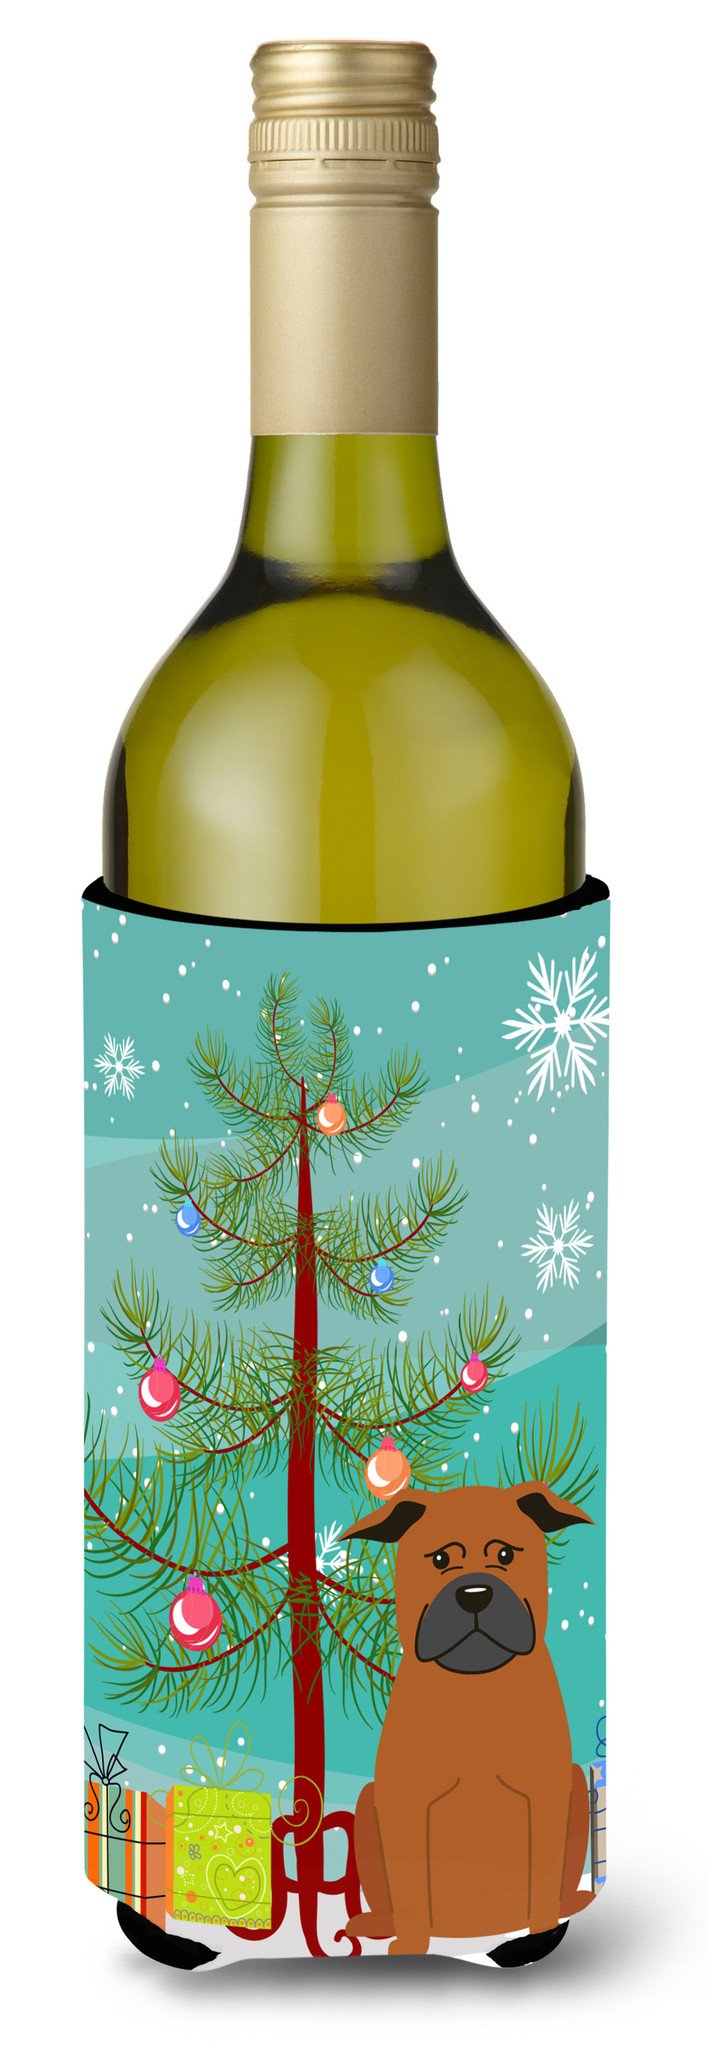 Merry Christmas Tree Chinese Chongqing Dog Wine Bottle Beverge Insulator Hugger BB4236LITERK by Caroline's Treasures